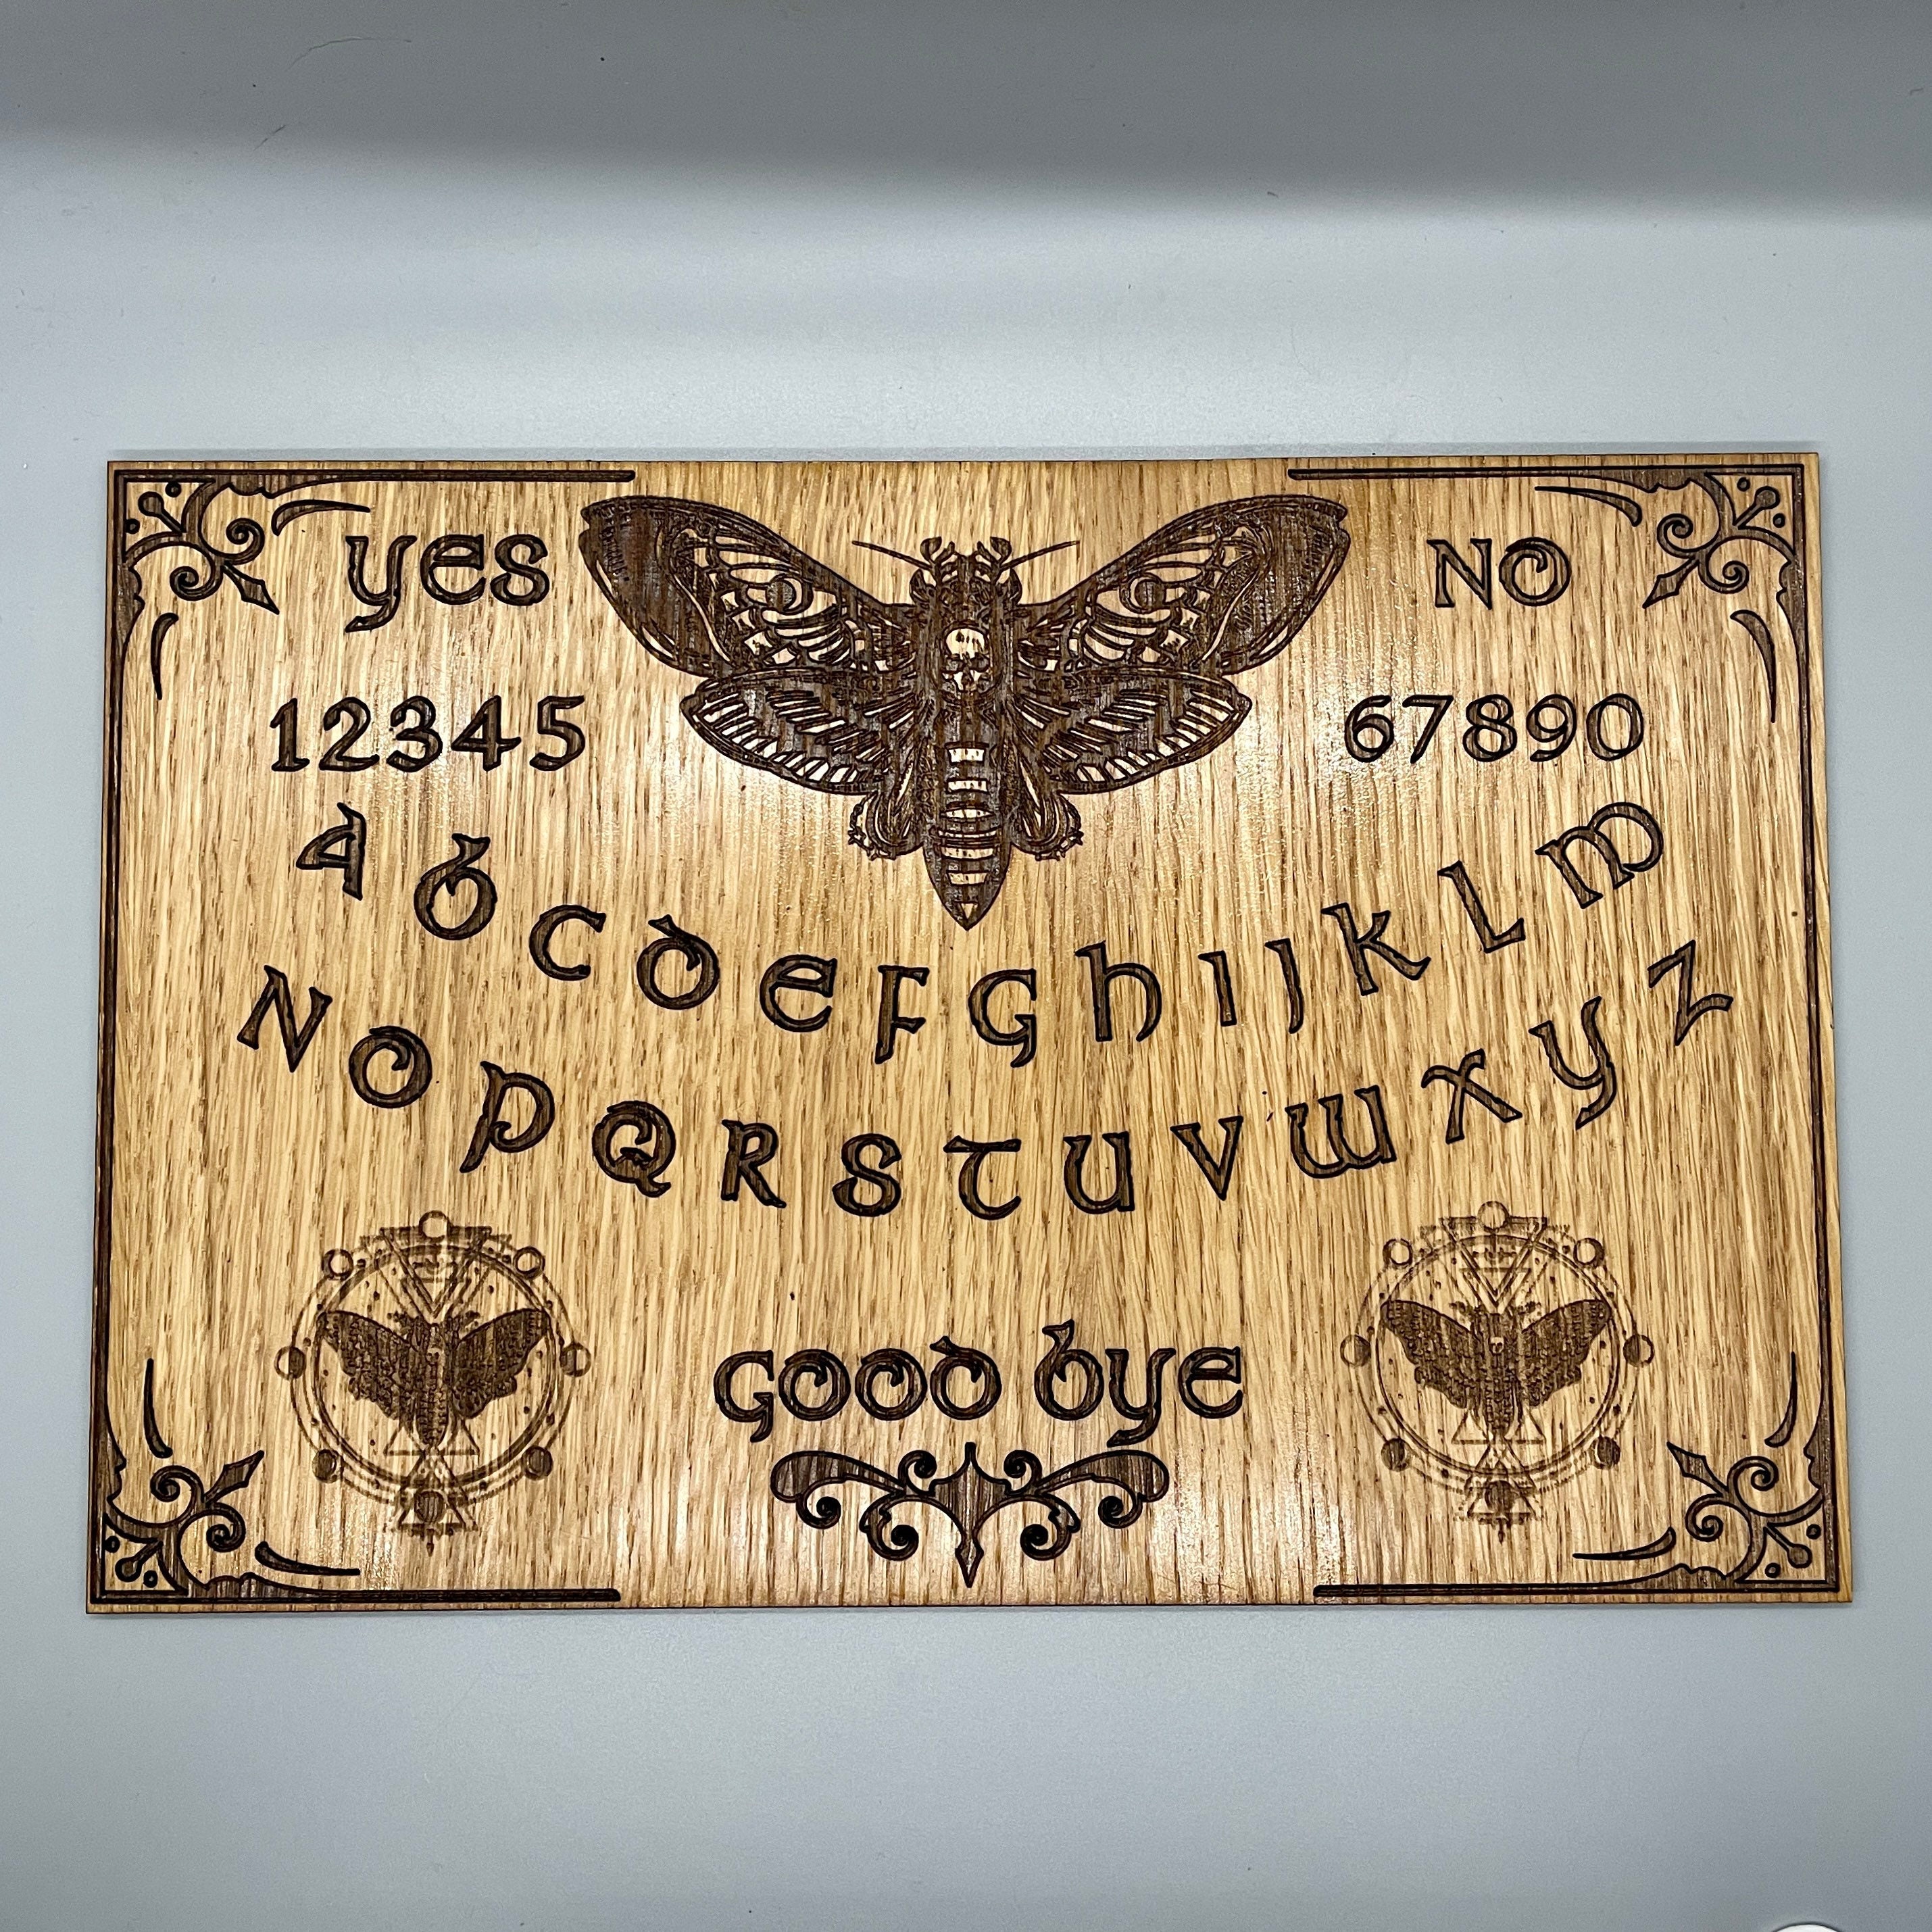 Achat Planche en bois type Ouija - Objet Décoratif, fait main, artisanal,  cadeaux, fabriqué en France, gravure laser, original, insolite, déco en gros